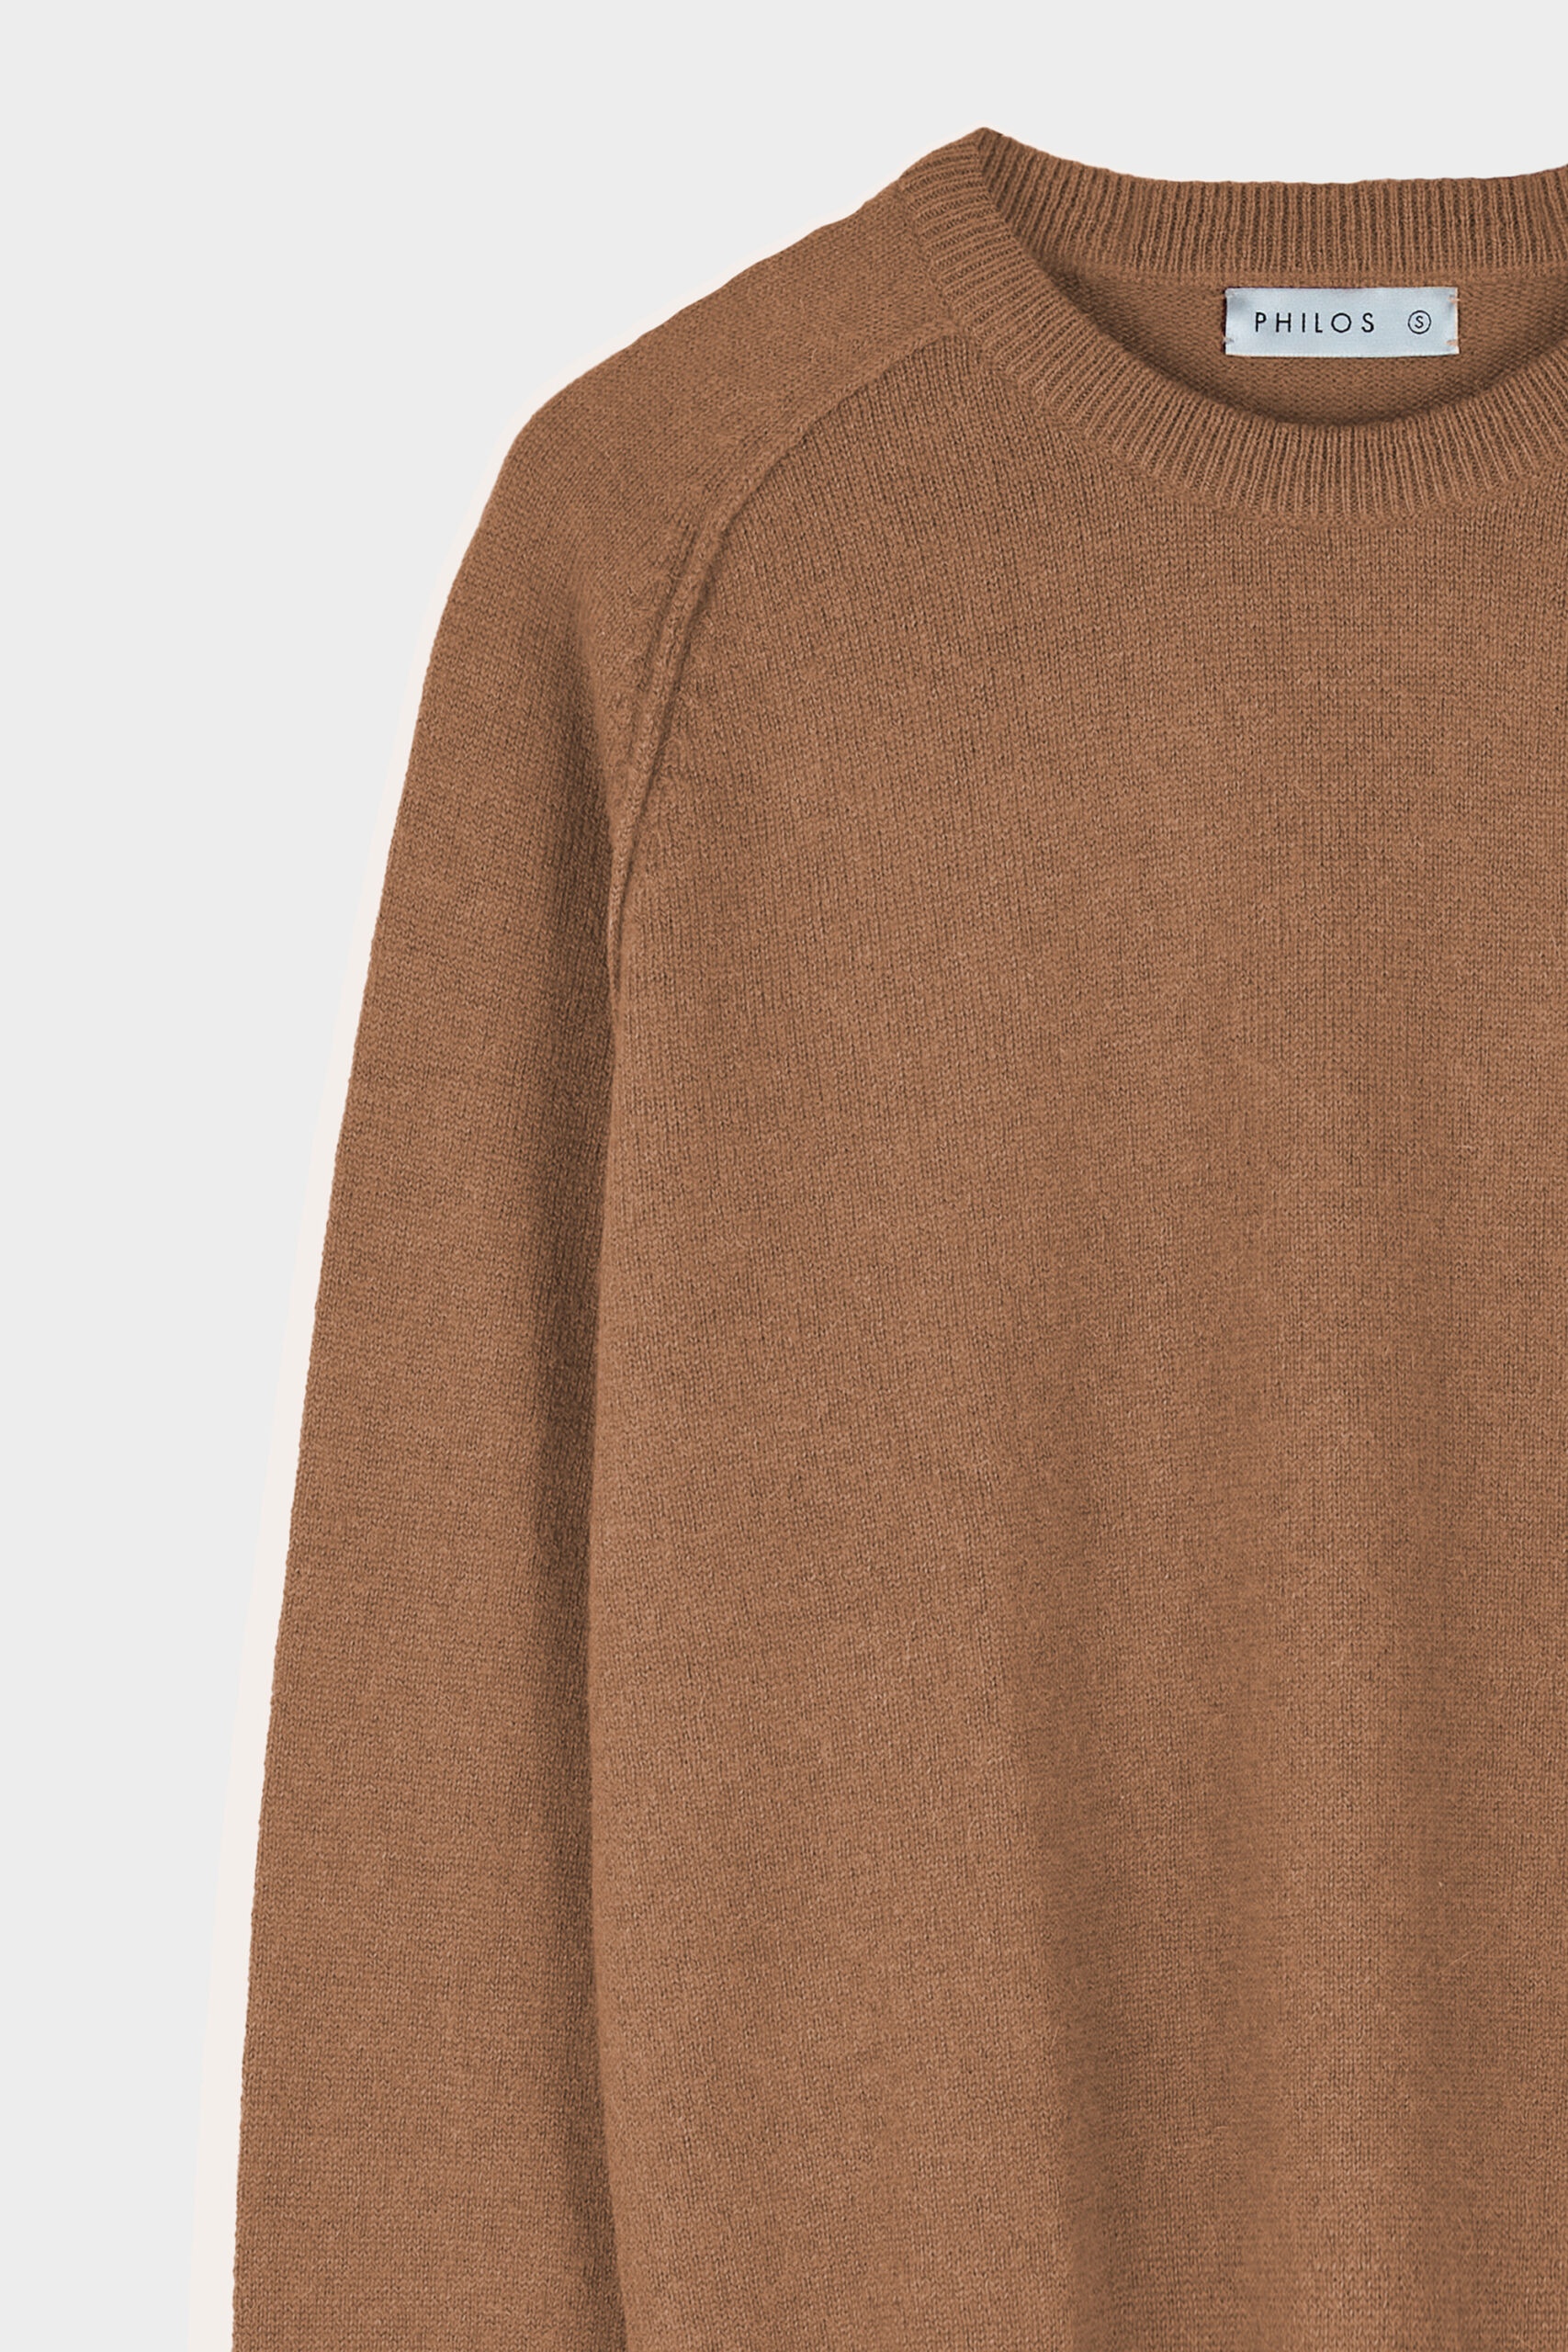 sweater ceibo camel detalle